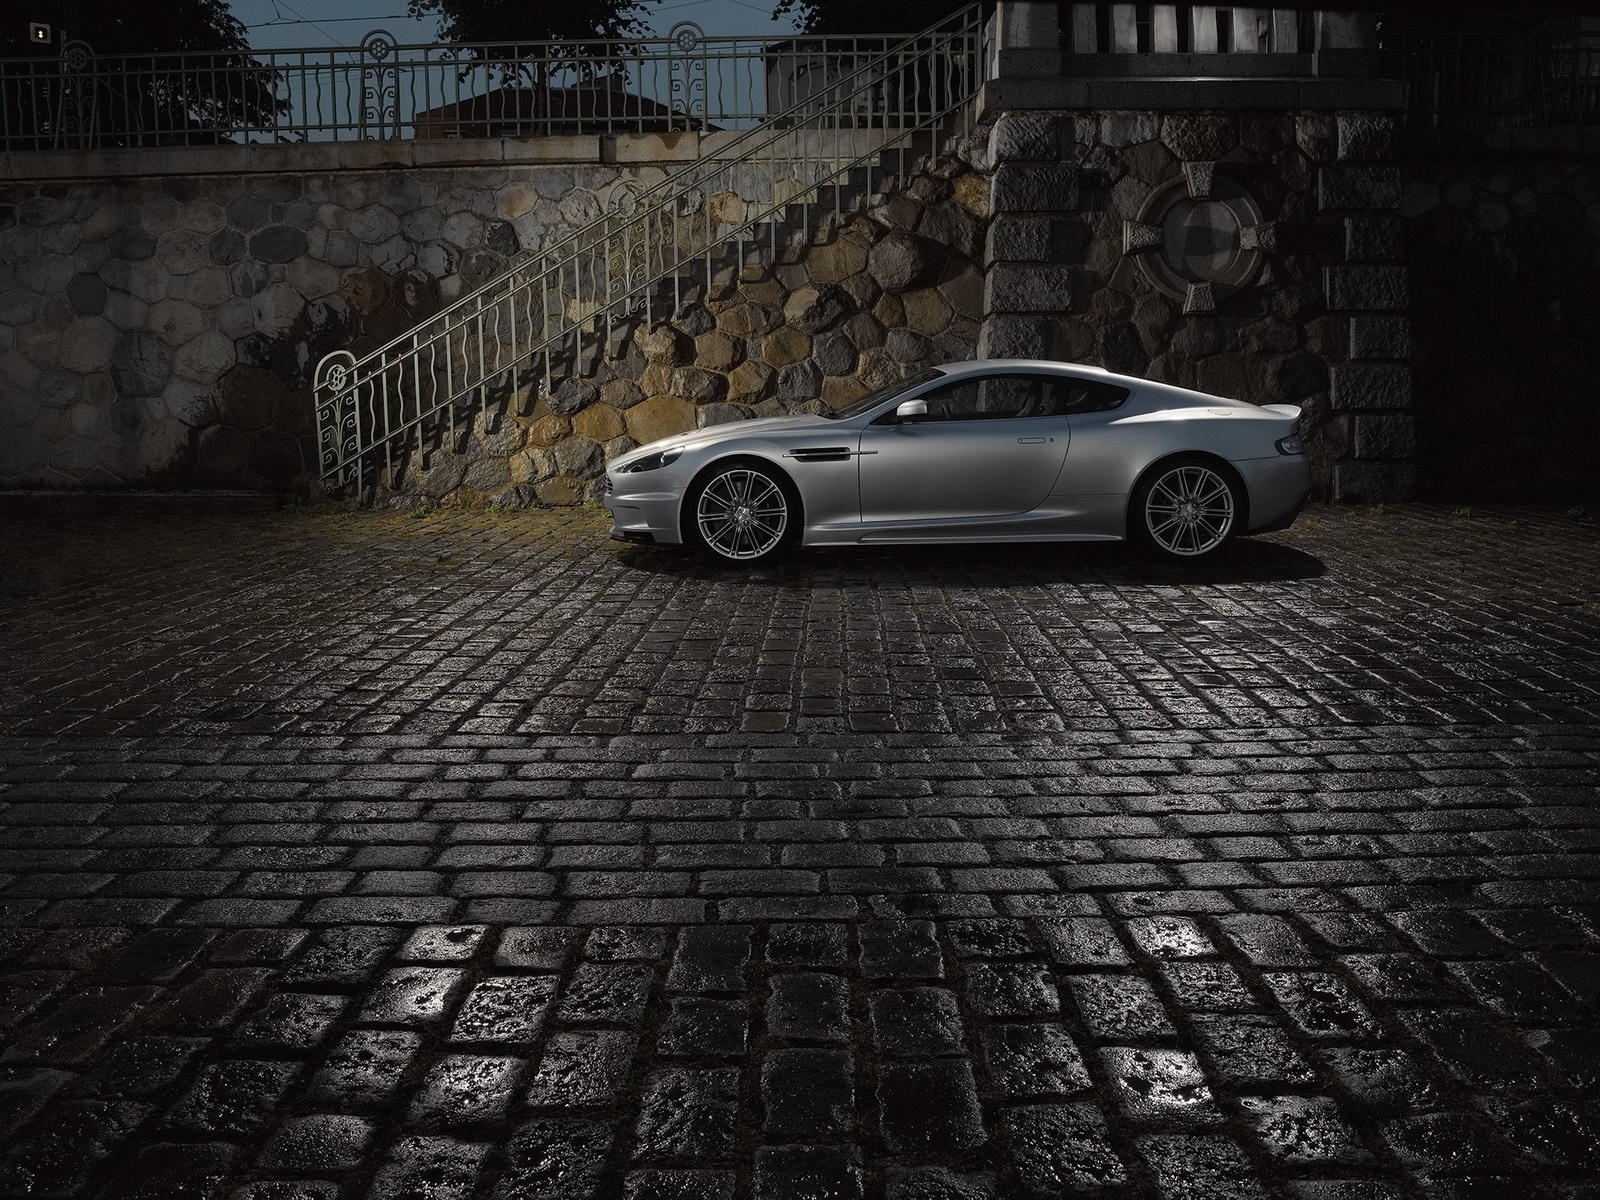 Скачать картинку Транспорт, Астон Мартин (Aston Martin), Машины в телефон бесплатно.